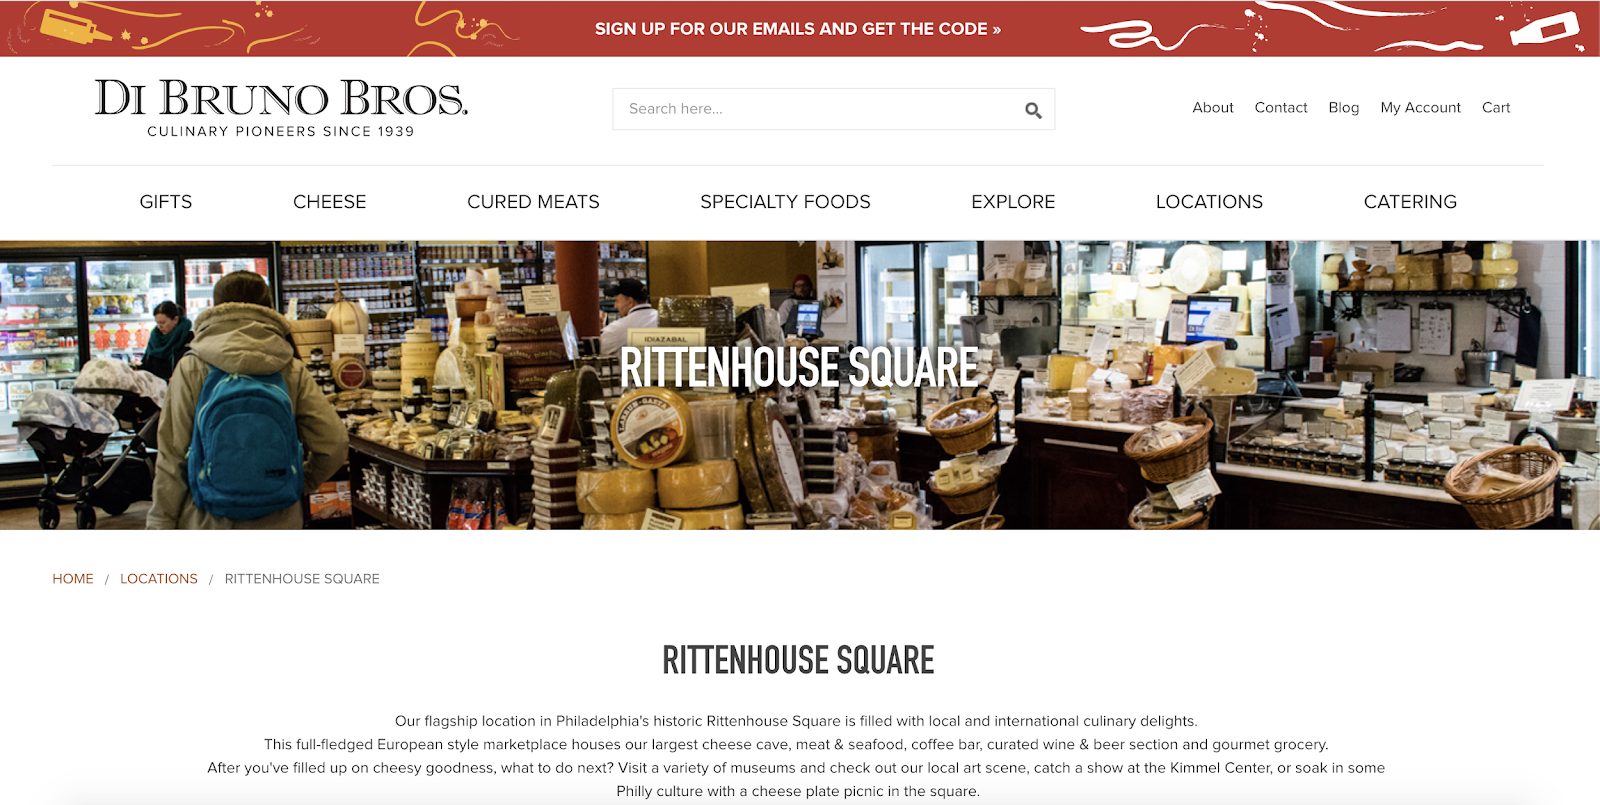 Di Bruno Bros.’s Rittenhouse Square Landing Page